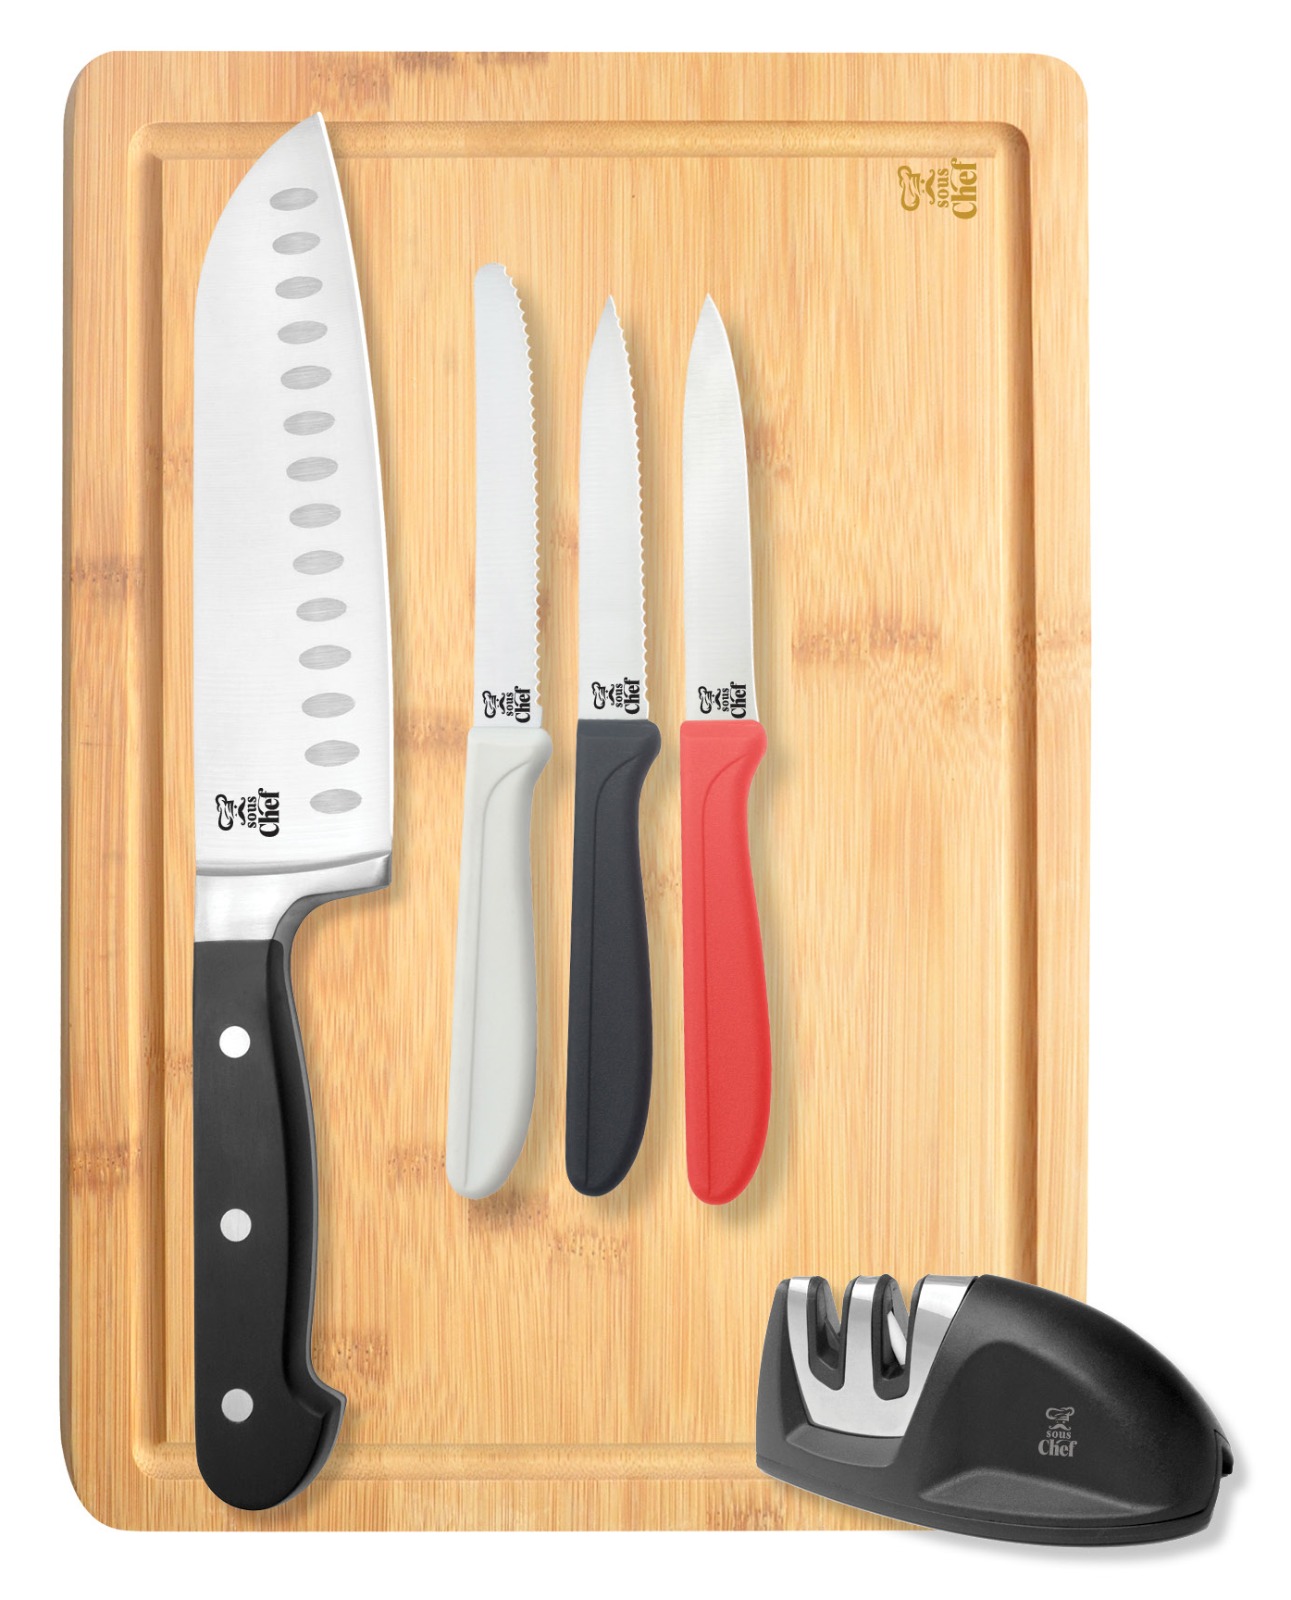 סט מקצועי למטבח סו שף 6 חלקים.
כולל: סכין שף סנטוקו מקצועי 18 ס